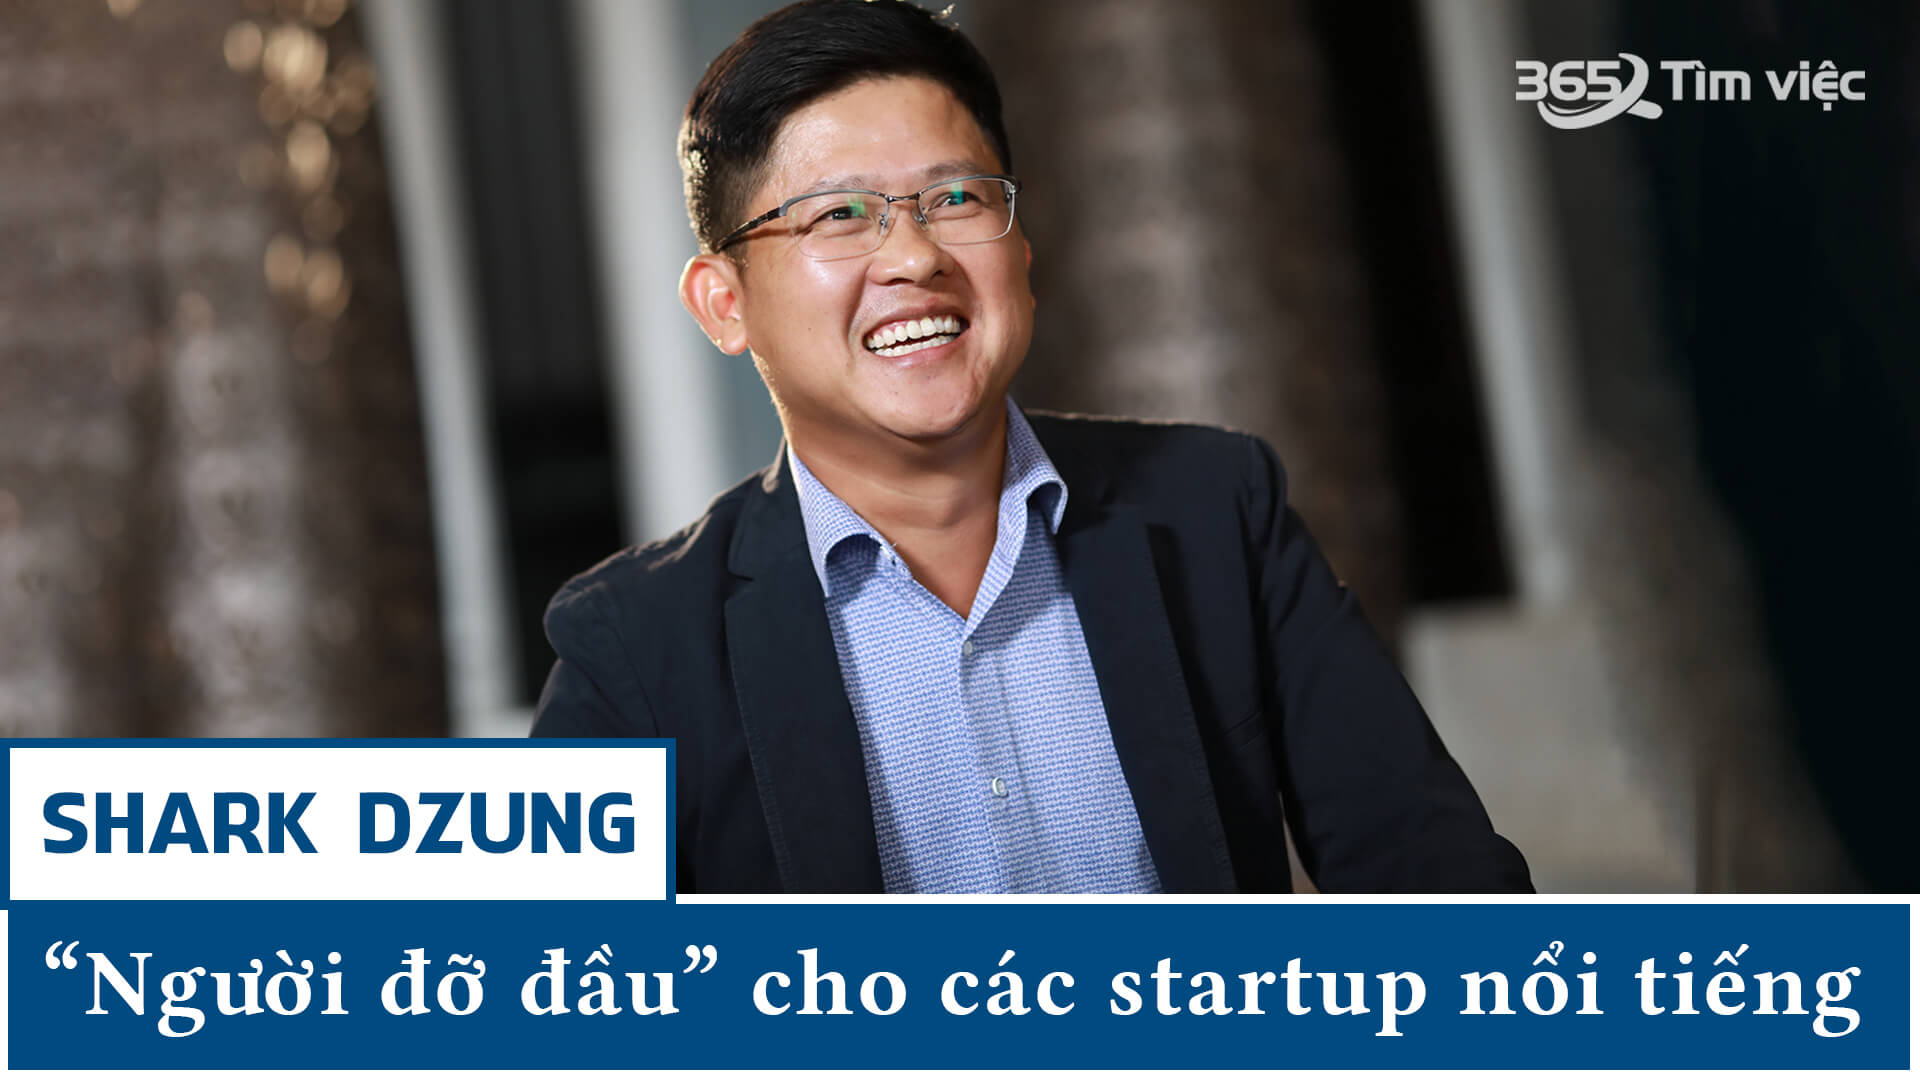 Shark Dzung đã lọt vào “mắt xanh” của Quỹ đầu tư mạo hiểm CyberAgent